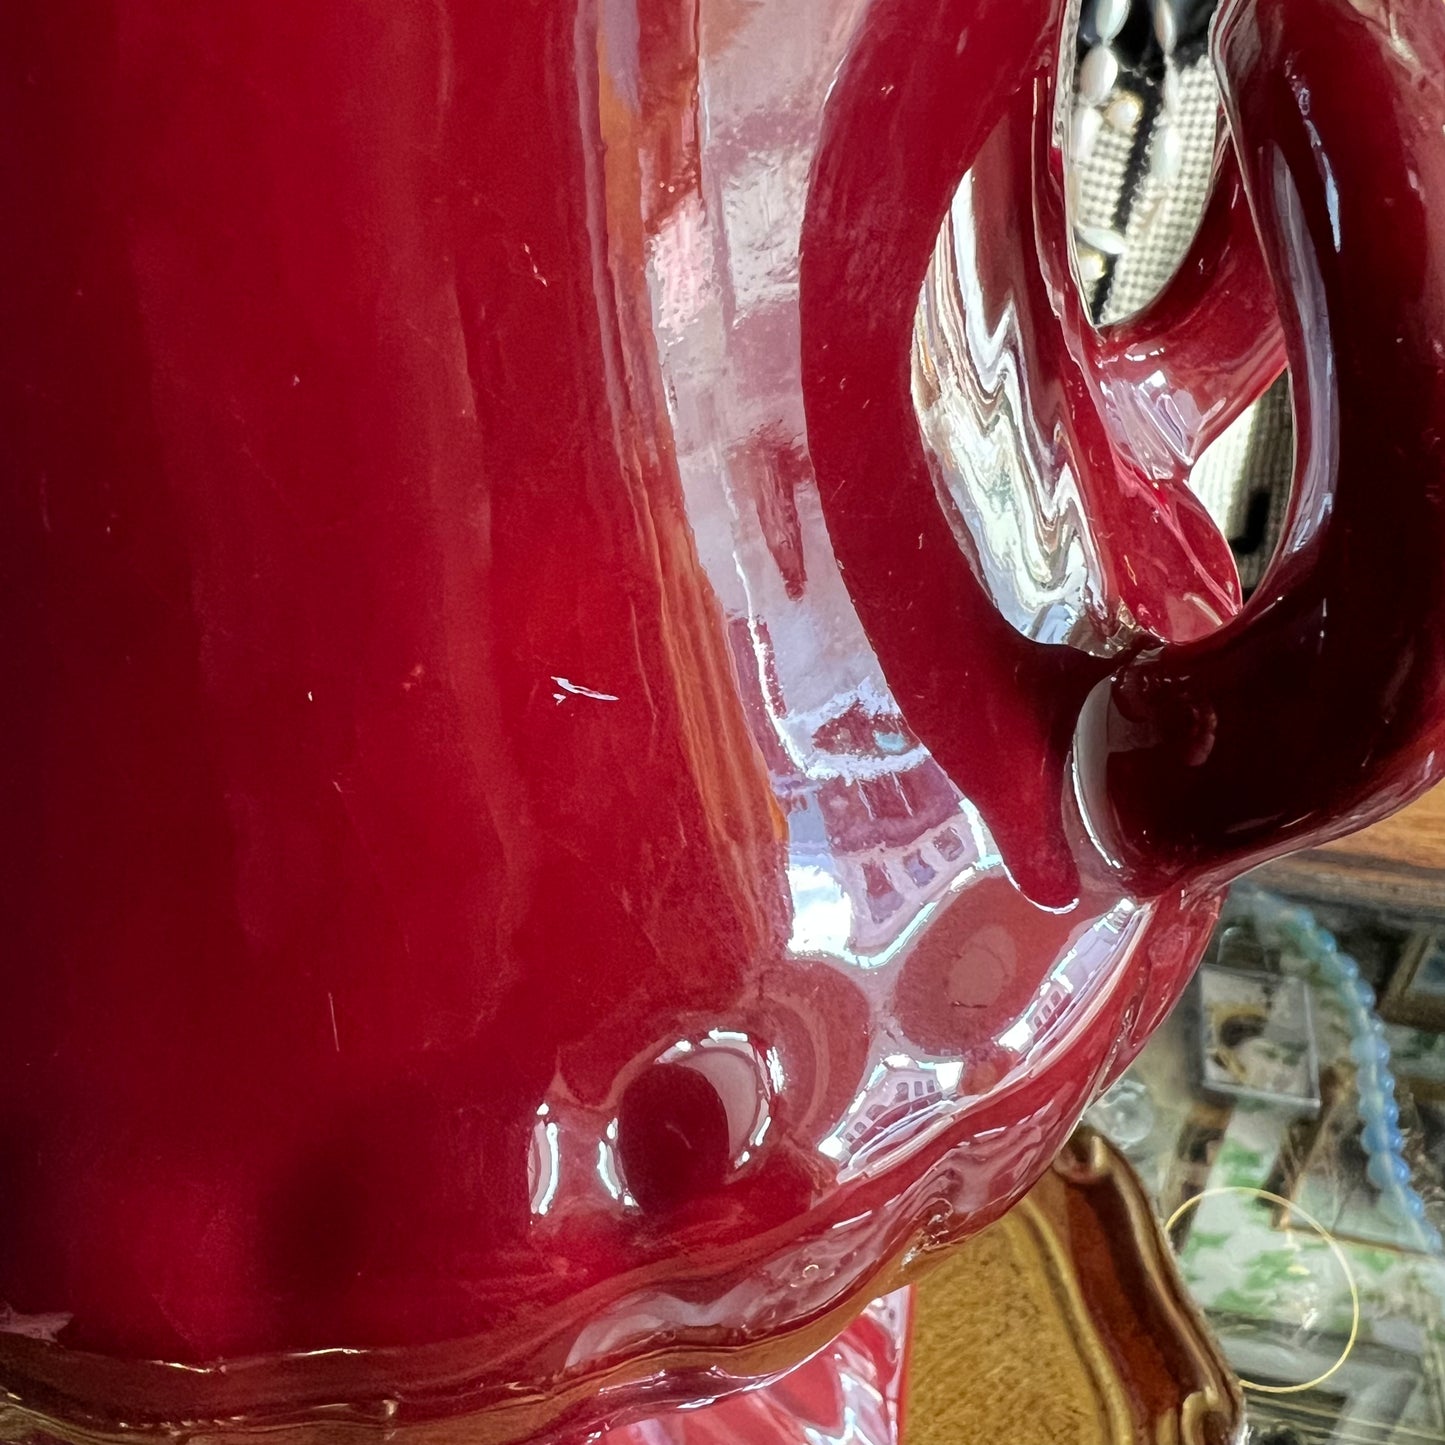 Vintage Large Burgundy Ceramic Urn Vase